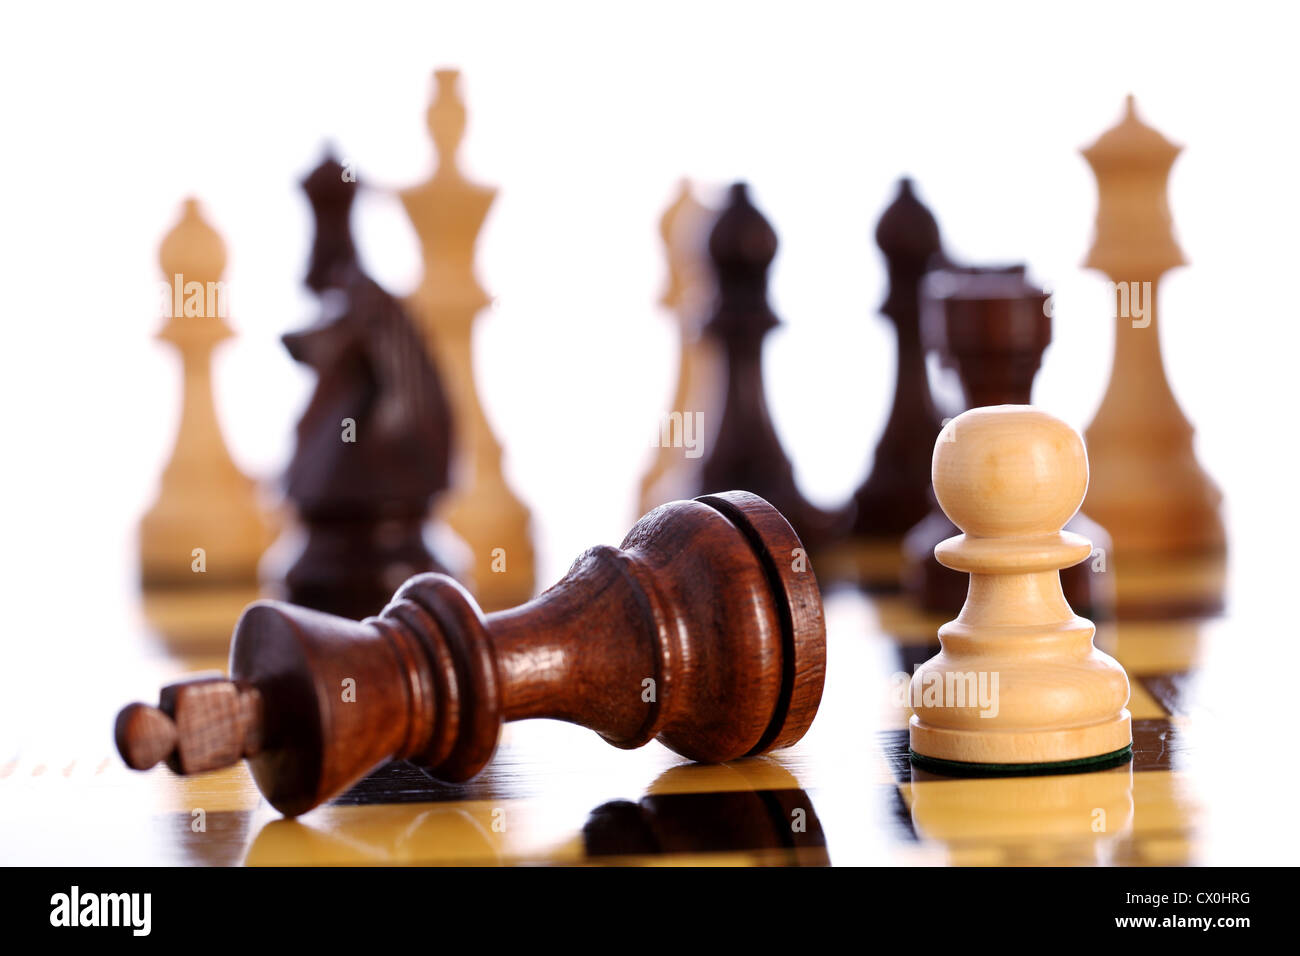 Juego de ajedrez llega a su fin cuando el rey es checkmated Foto de stock